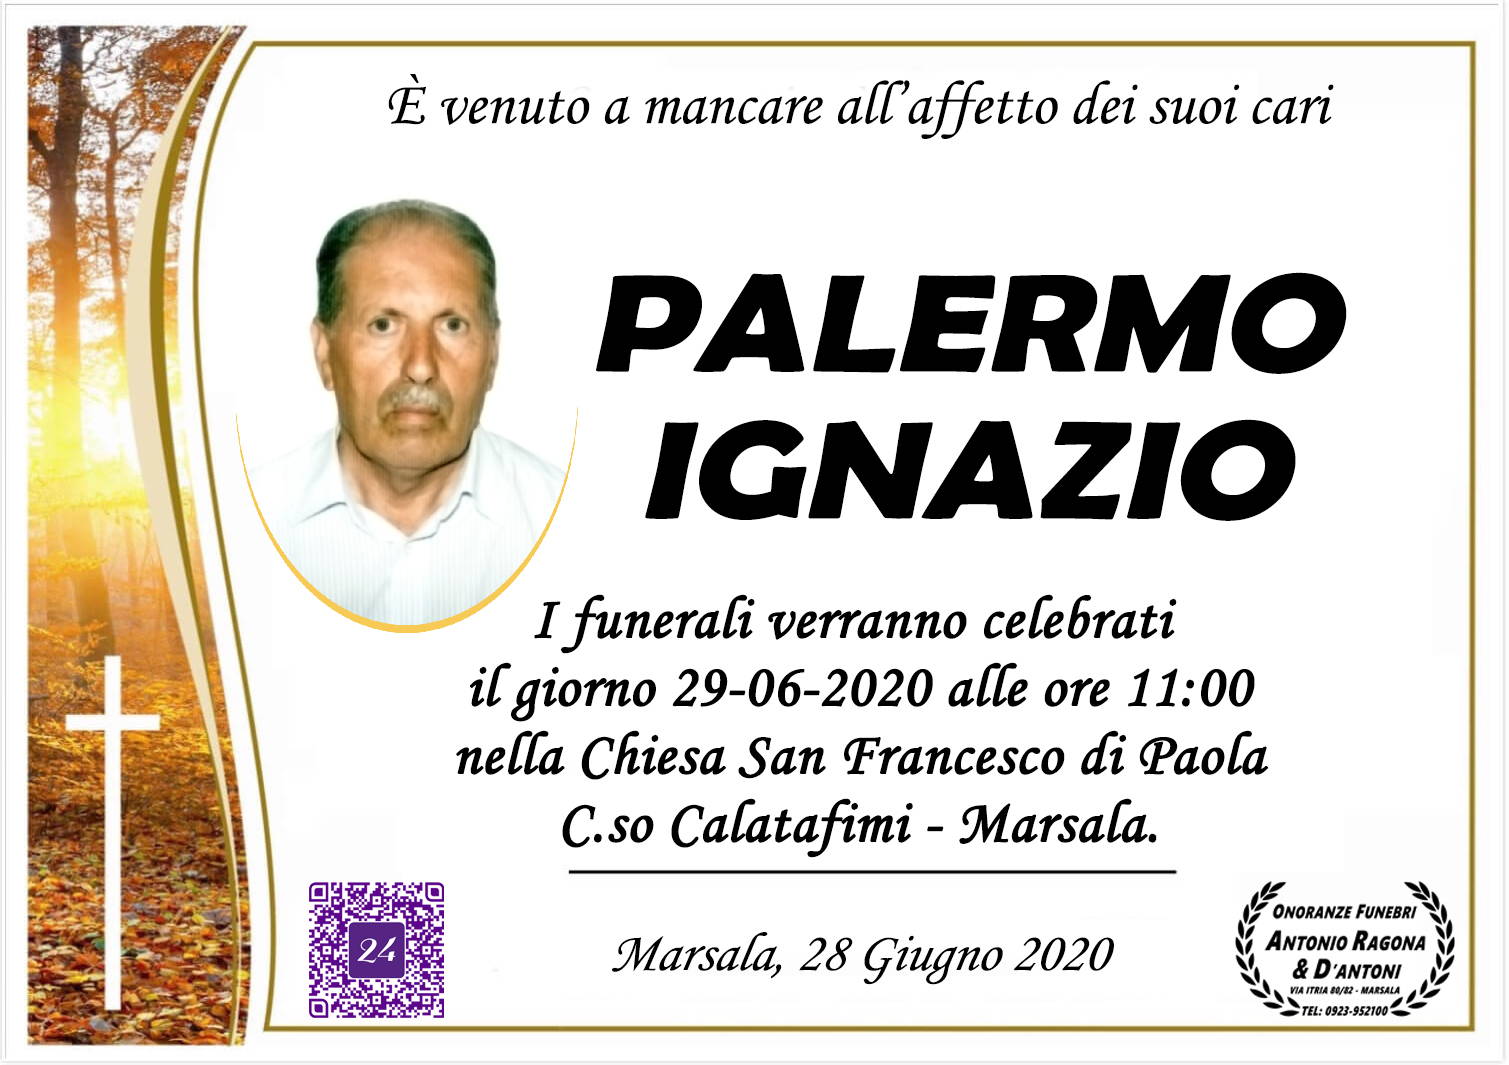 Ignazio Palermo